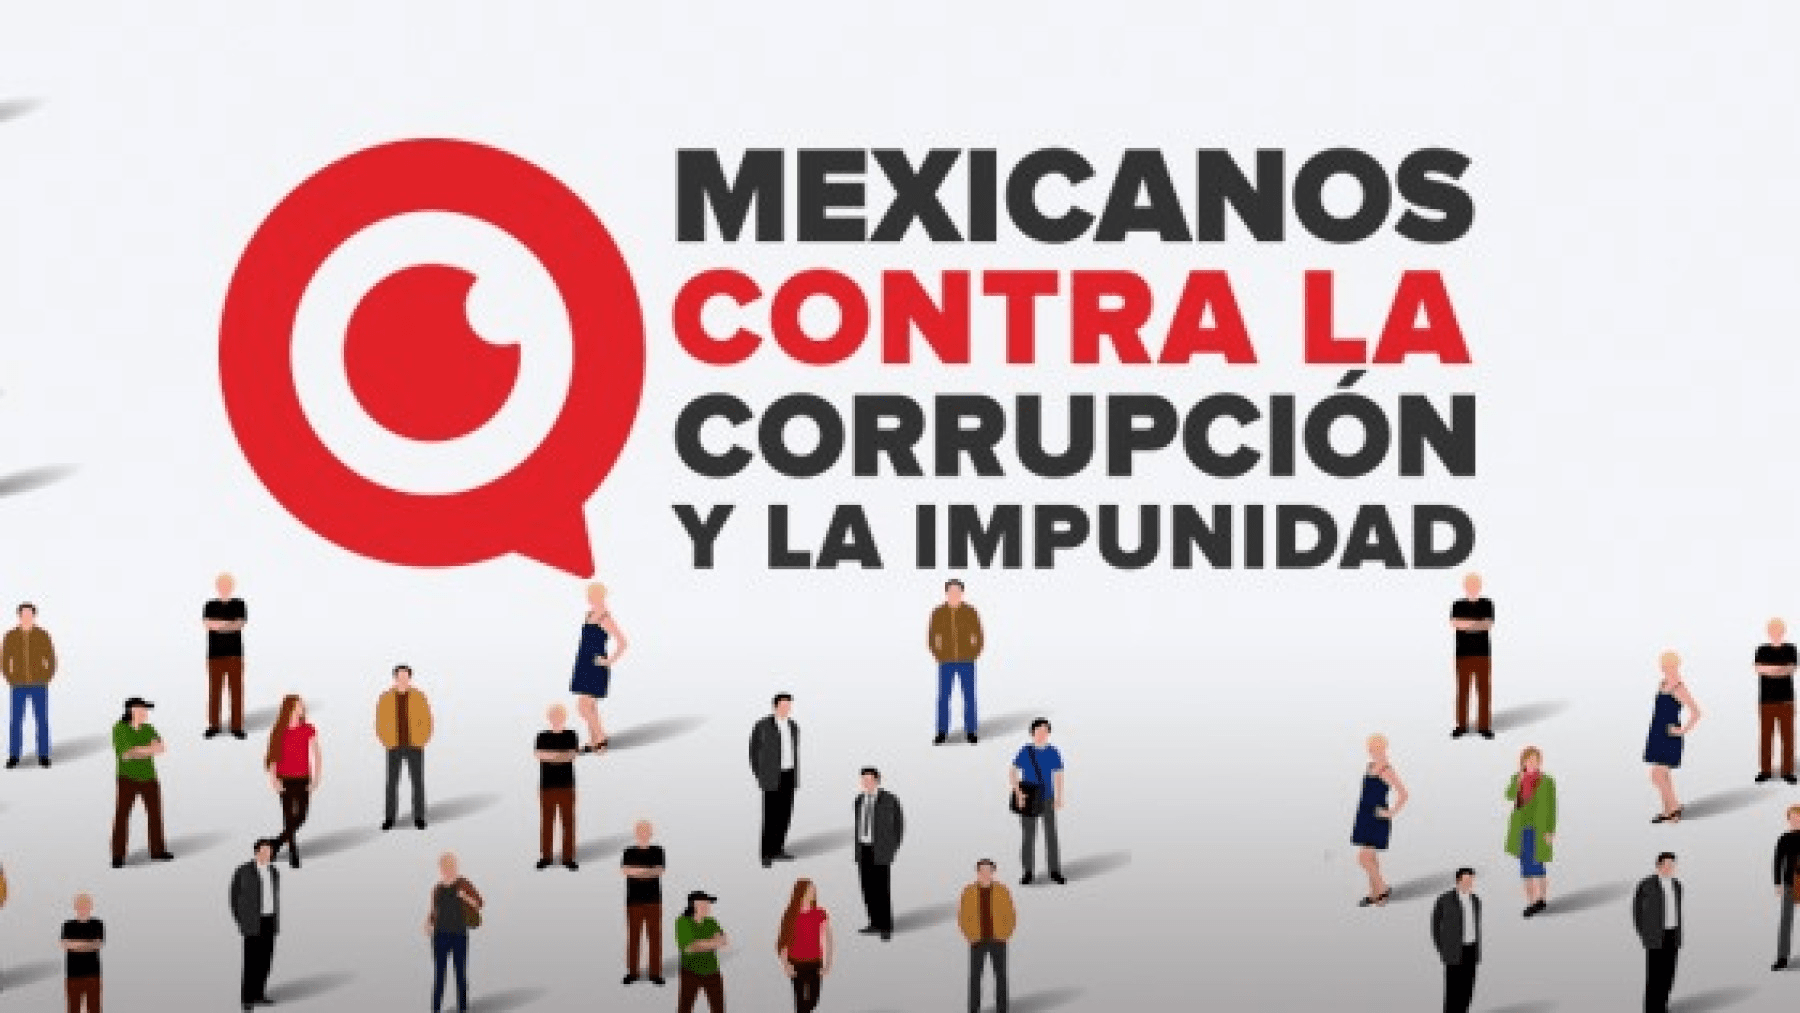 LA COSTUMBRE DEL PODER: Mexicanos contra la corrupción: ONG’S vs partidos